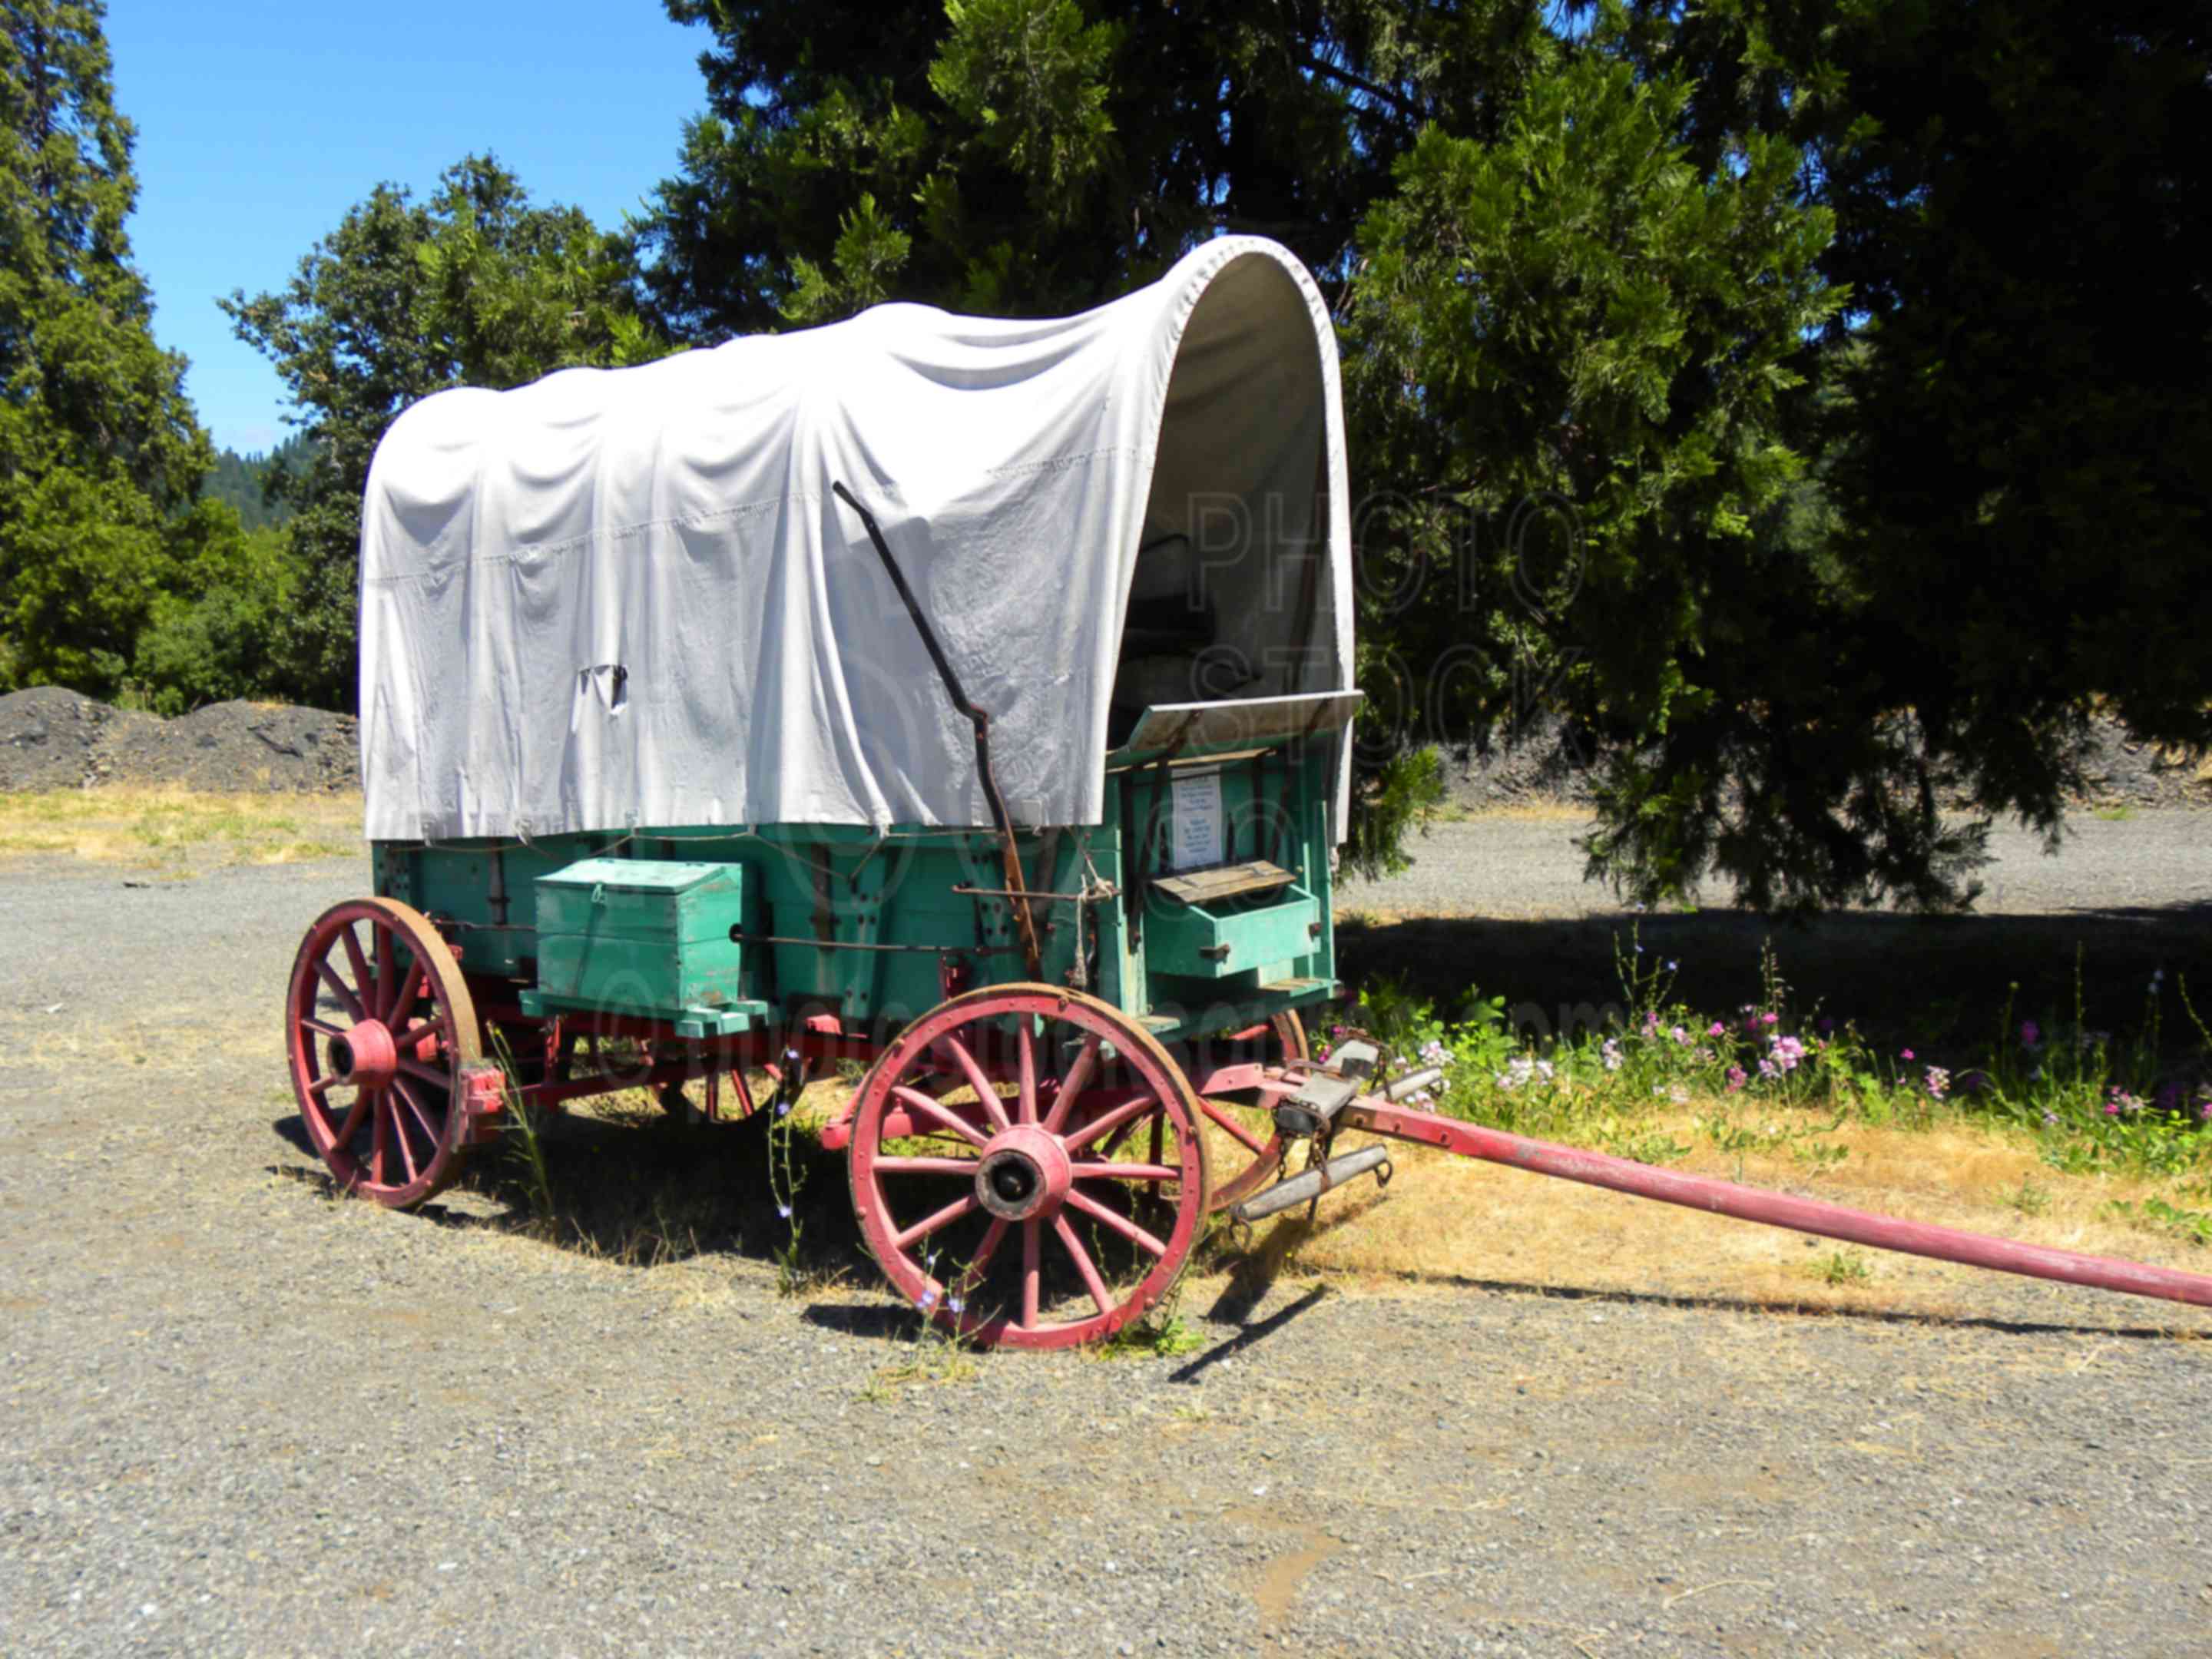 Covered Wagon,wagon,transportation,wheel,pioneer,applegate trail,westward,emigrants